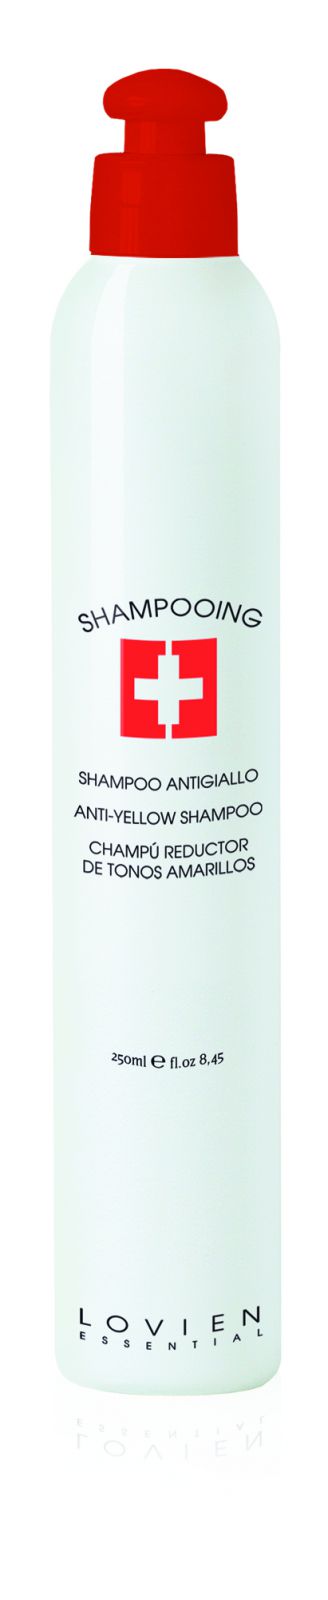 Lovien Shampoo Antigiallo 250ml - šampon pro šedivé a melírované vlasy